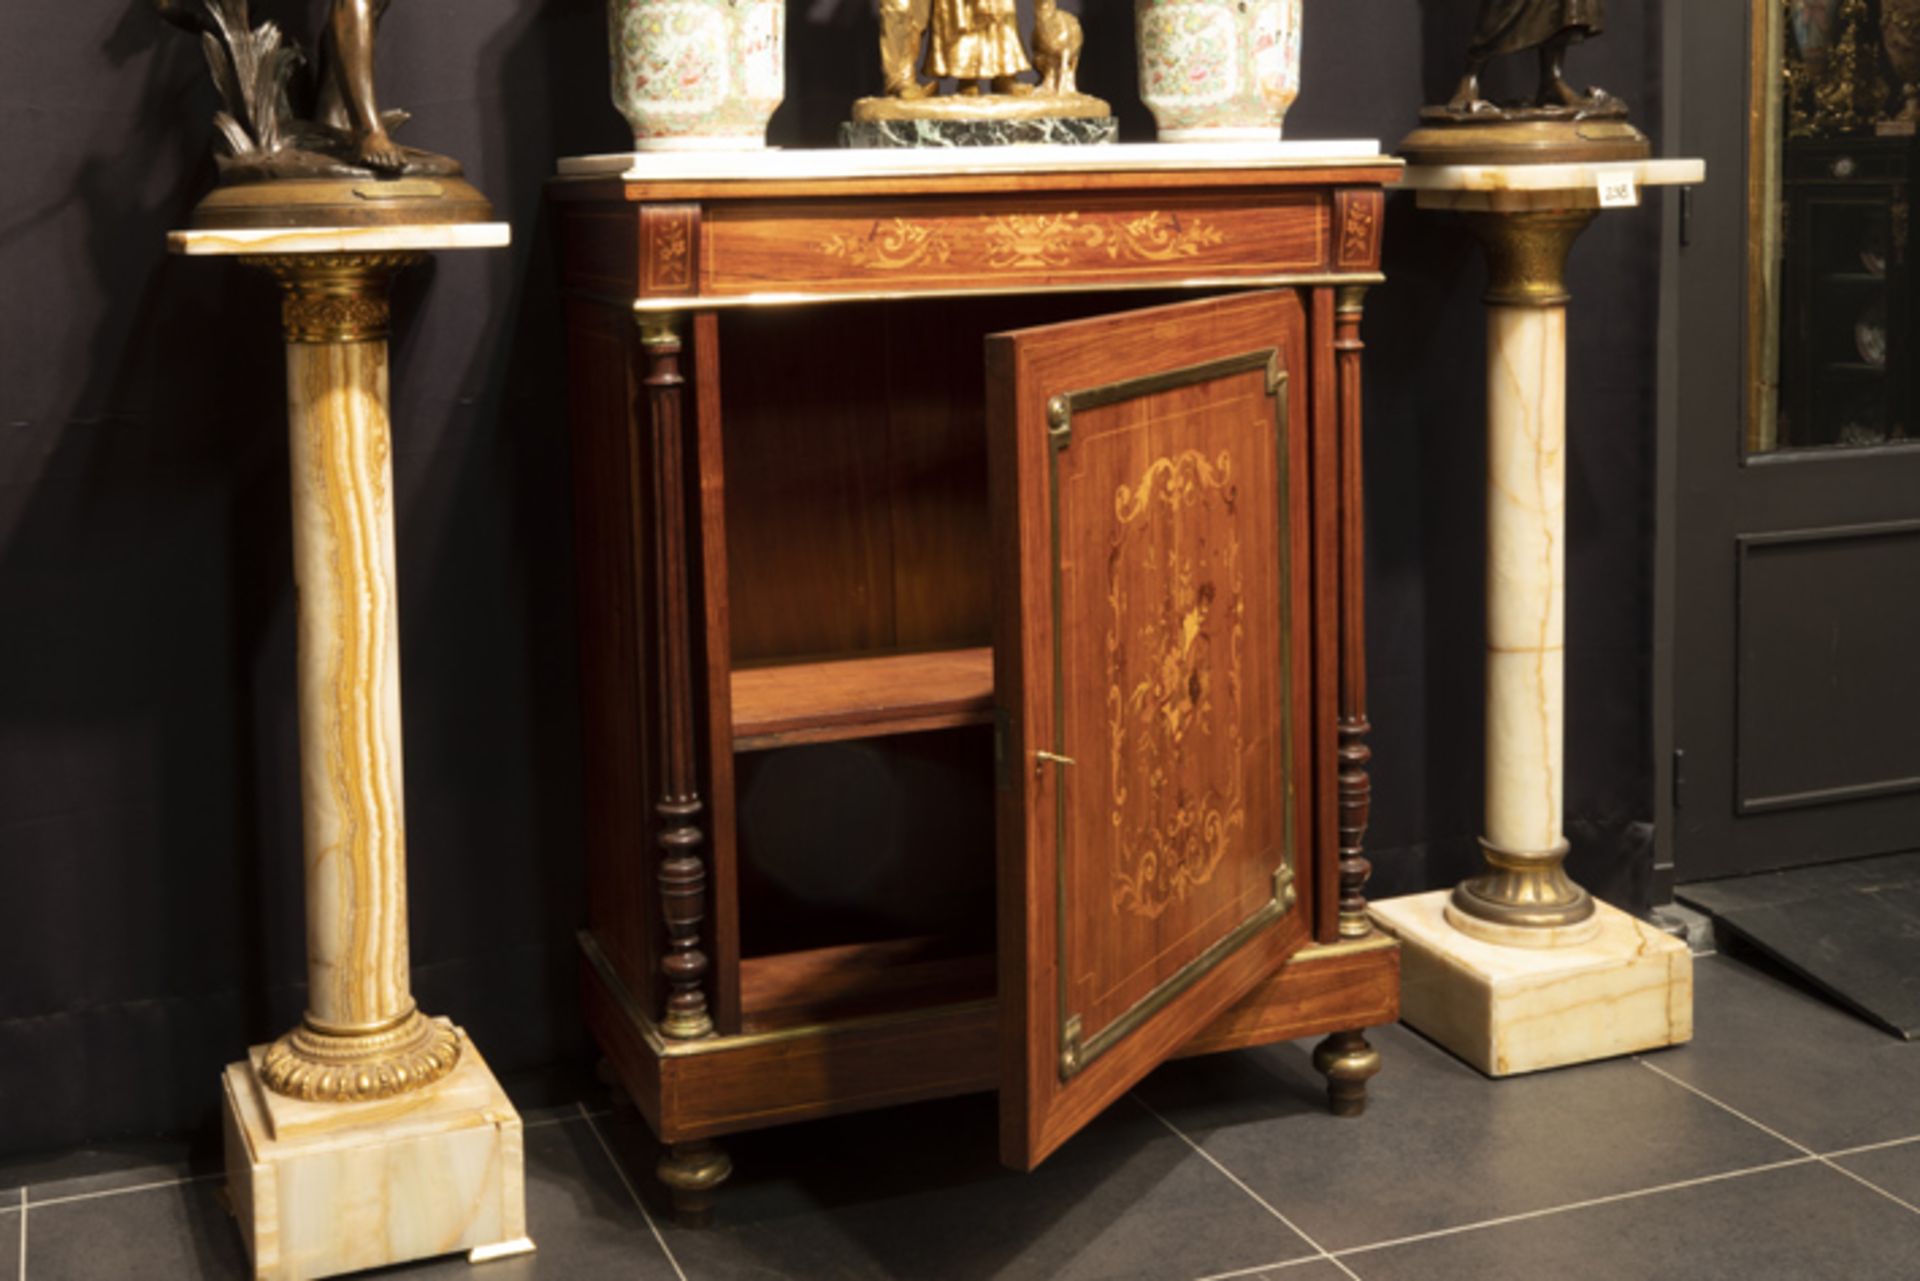 FRANKRIJK - 19° EEUW neoclassicistisch meubel in marqueterie versierd met koper- en [...] - Bild 2 aus 3